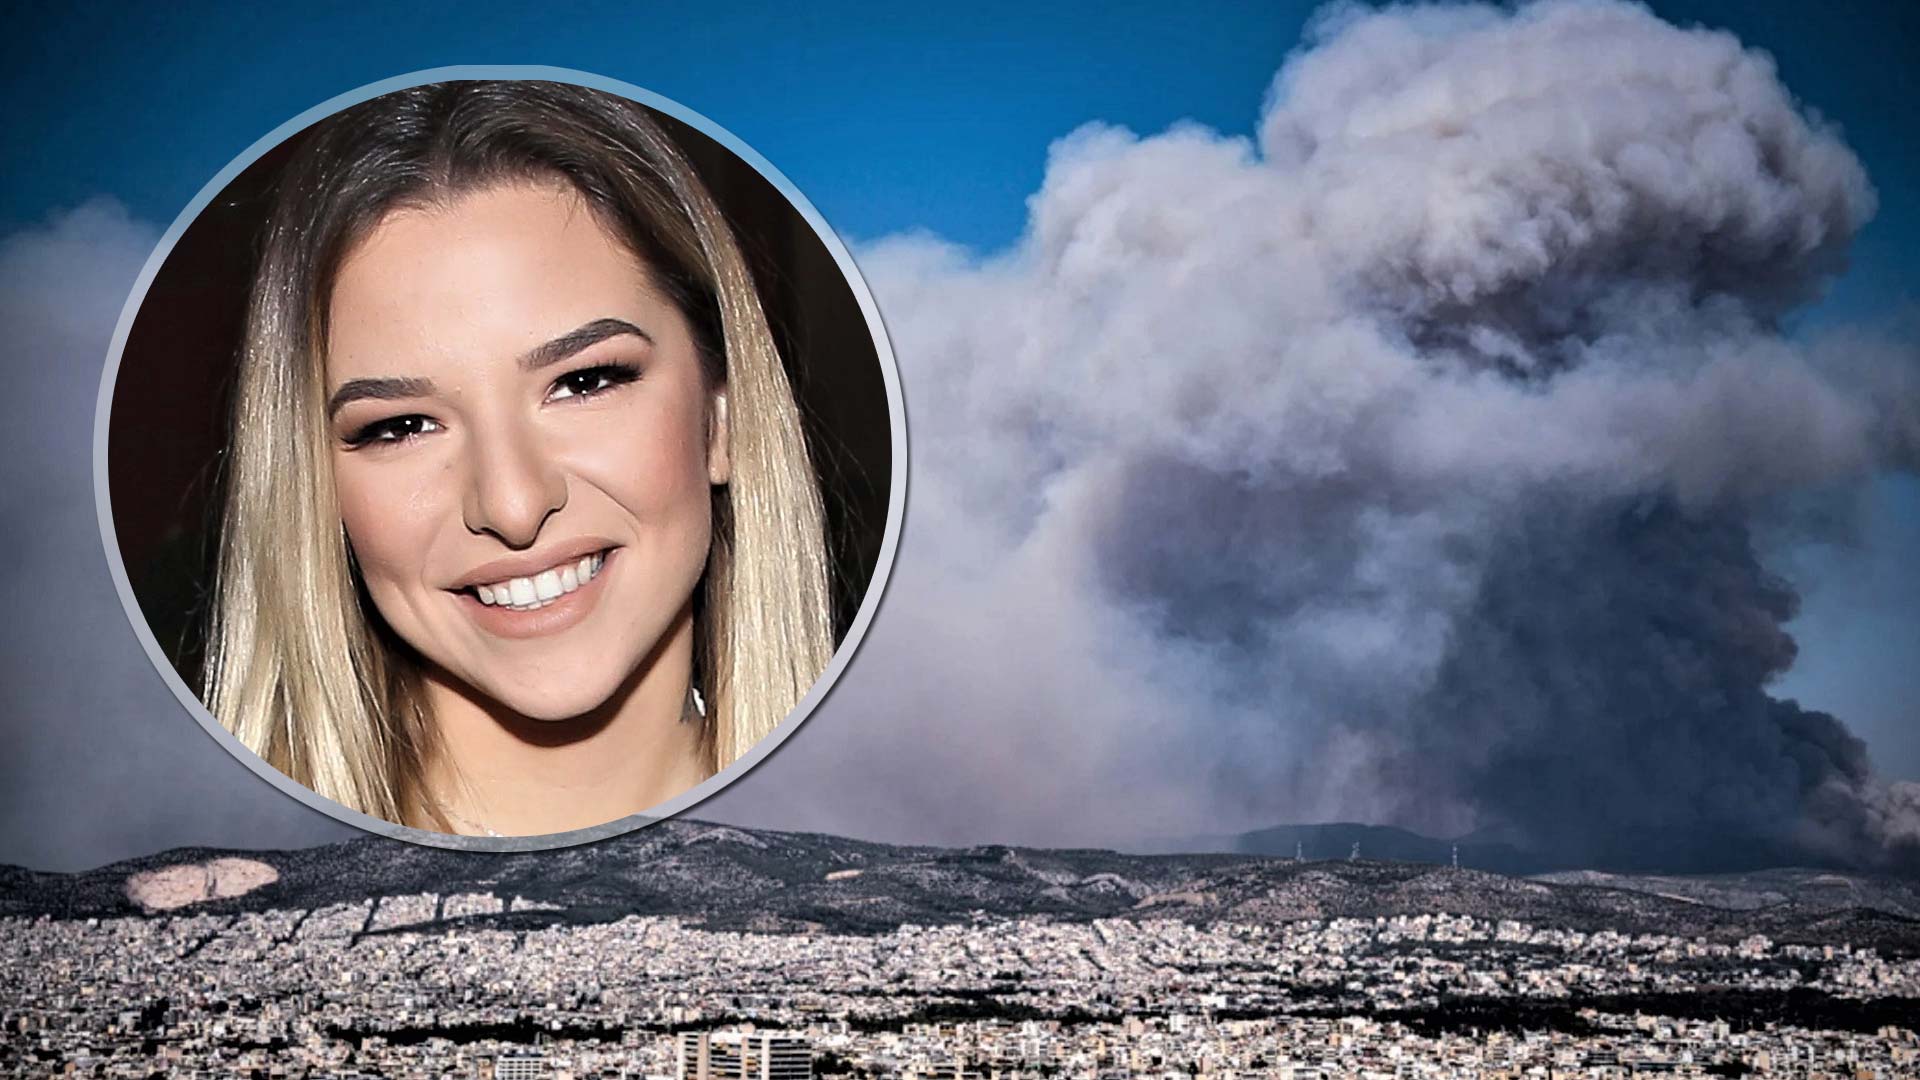 Εριέττα Κούρκουλου: Κατά των influencer - «Ποια ακριβώς είναι η επιρροή σας, τη στιγμή που η Ελλάδα καίγεται;»